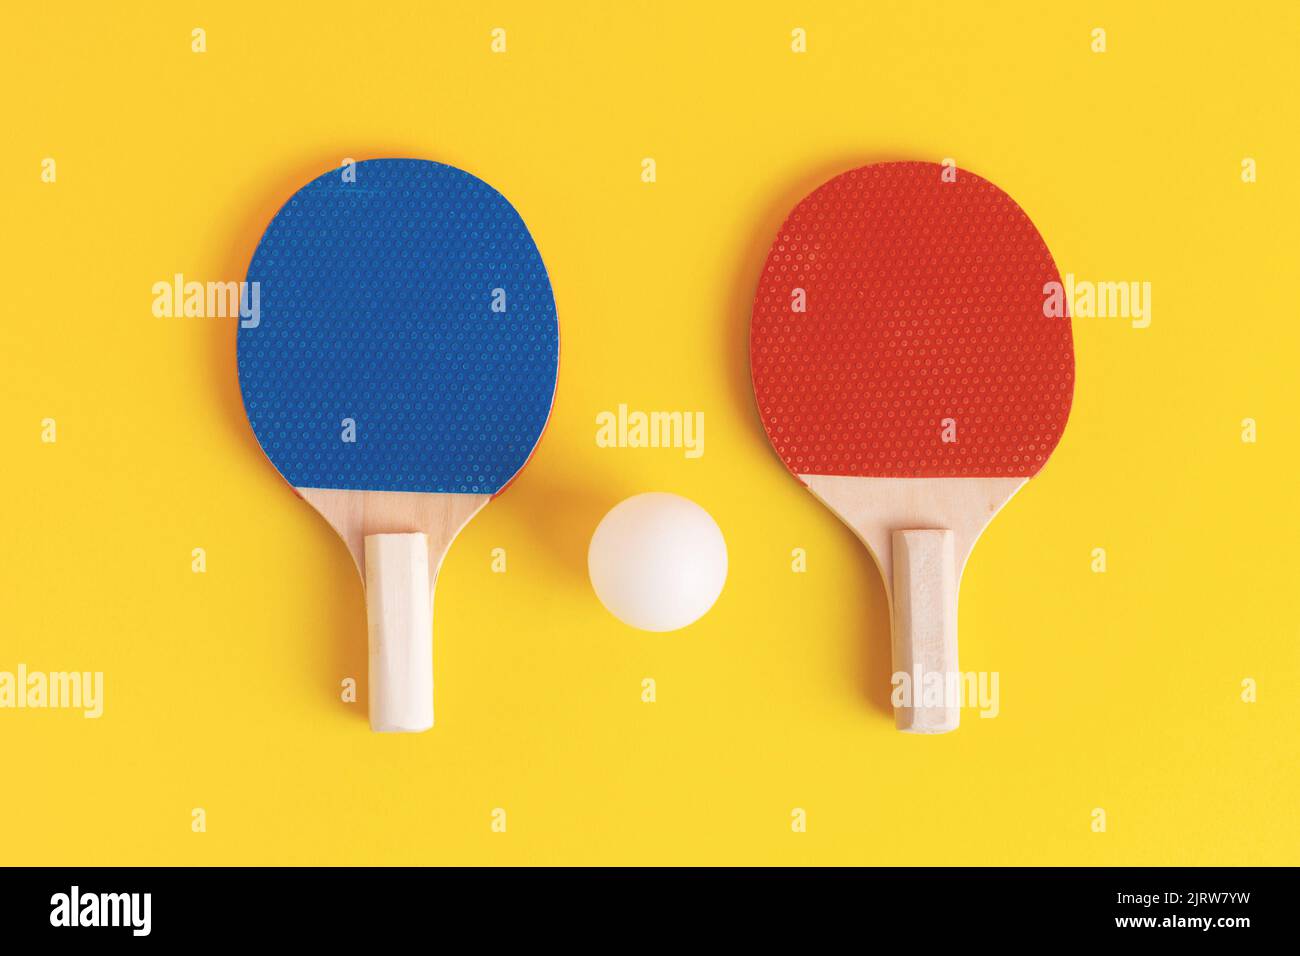 Un par de raquetas de tenis de mesa azul y rojo y una pelota blanca sobre fondo amarillo. Vista superior, fotografía de estudio. Equipo de tenis de mesa o ping pong. Foto de stock